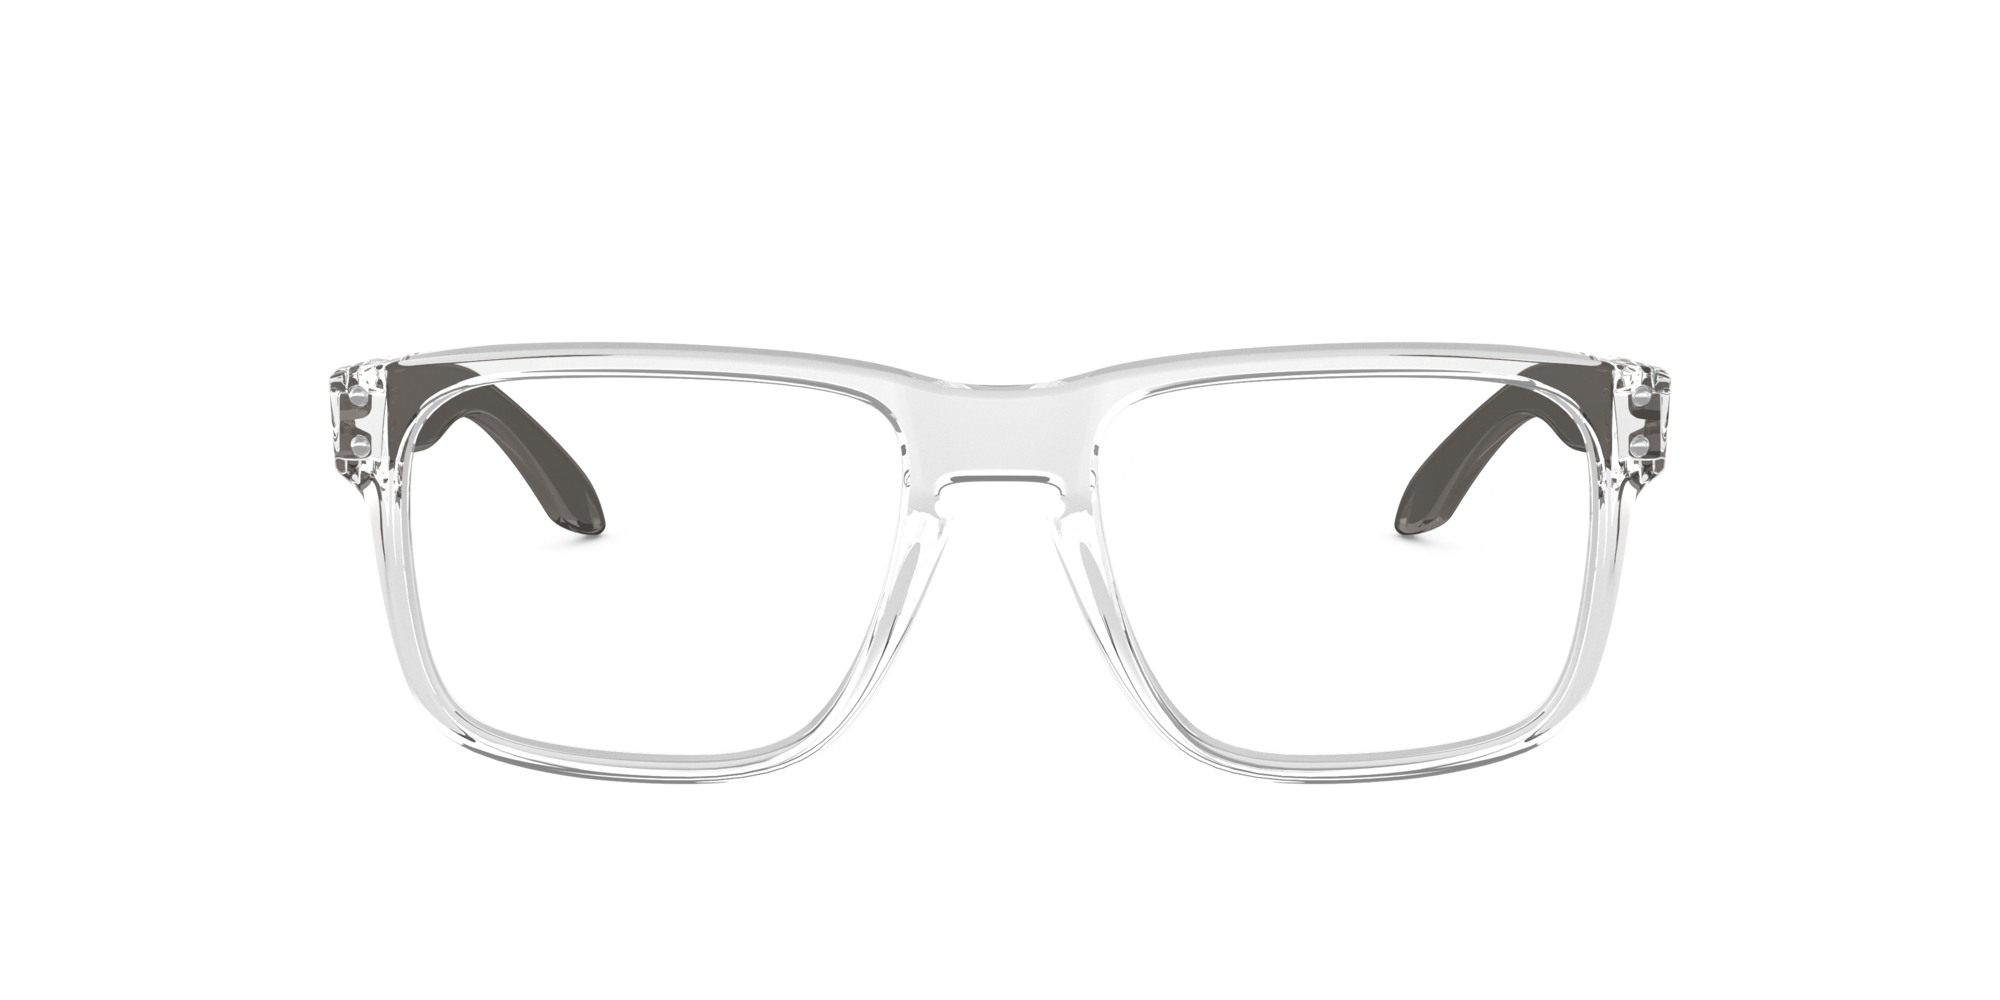 Das Bild zeigt die Korrektionsbrille OX8156 815603  von der Marke Oakley  in Transparent glänzend.